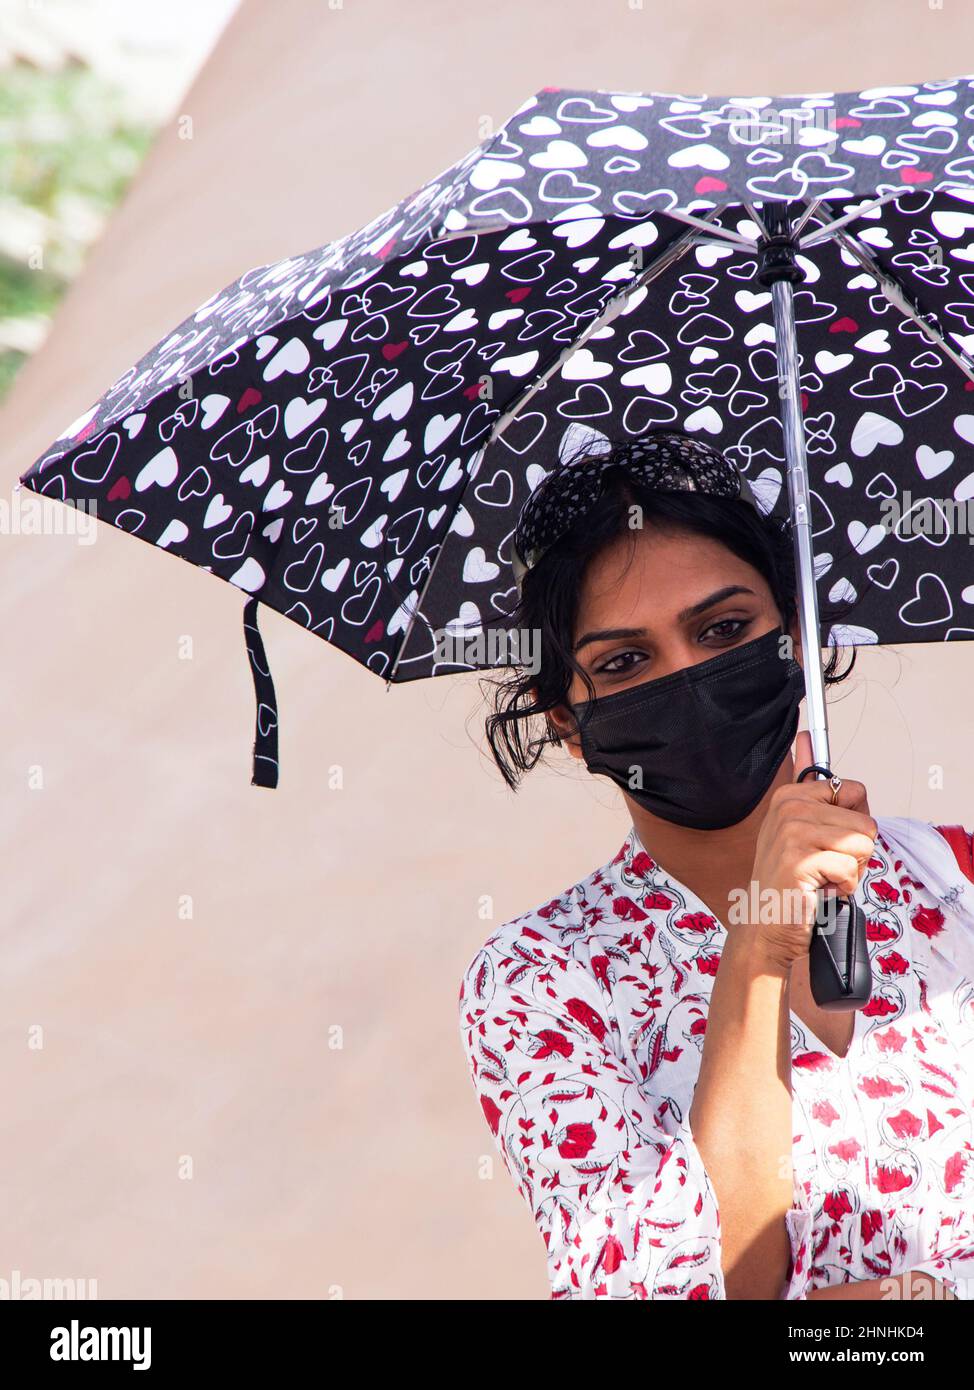 Tausendjährige Frau mit einem gemusterten Regenschirm in einer medizinischen Maske Stockfoto